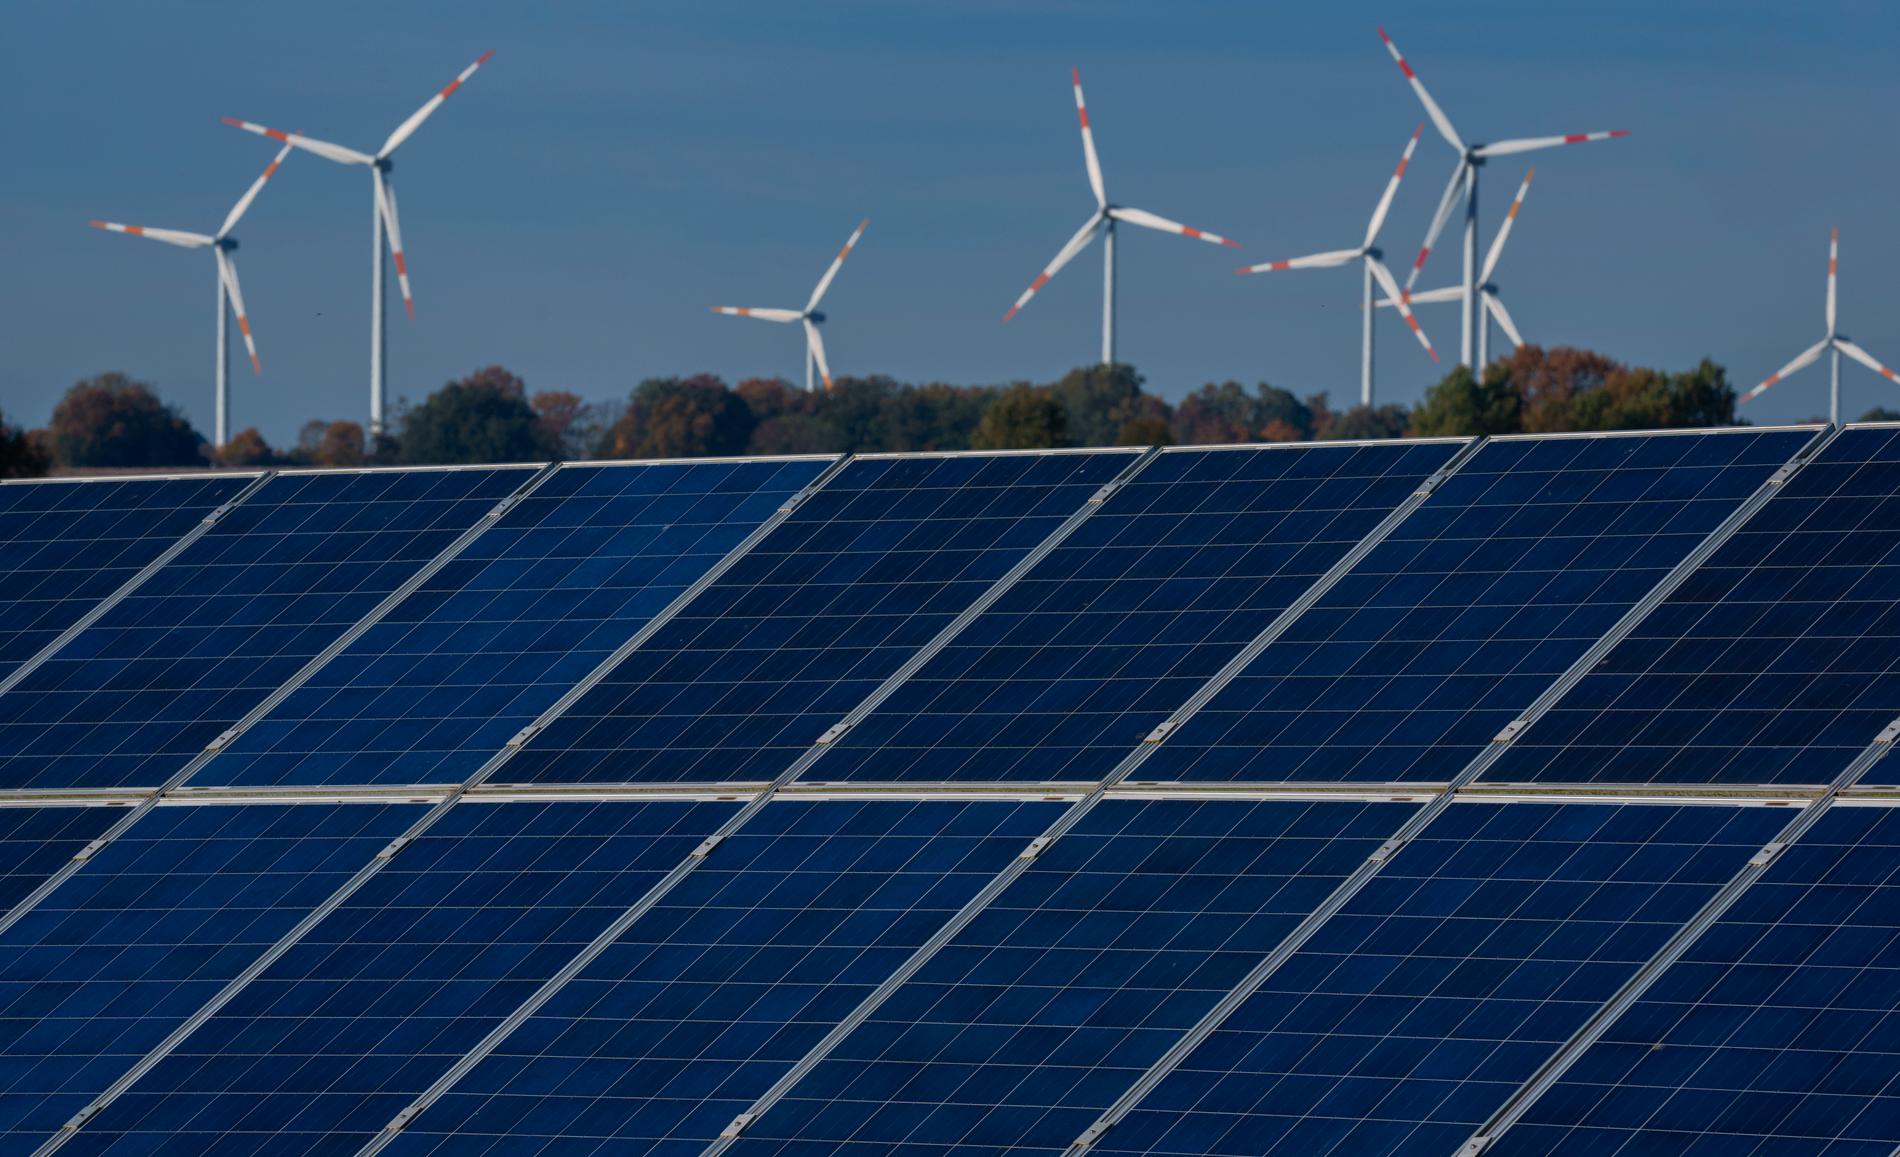 Miljöpartiet vill underlätta utbyggnaden av vindkraften – och föreslår ett stöd för solvärme likt det som idag ges för solceller.